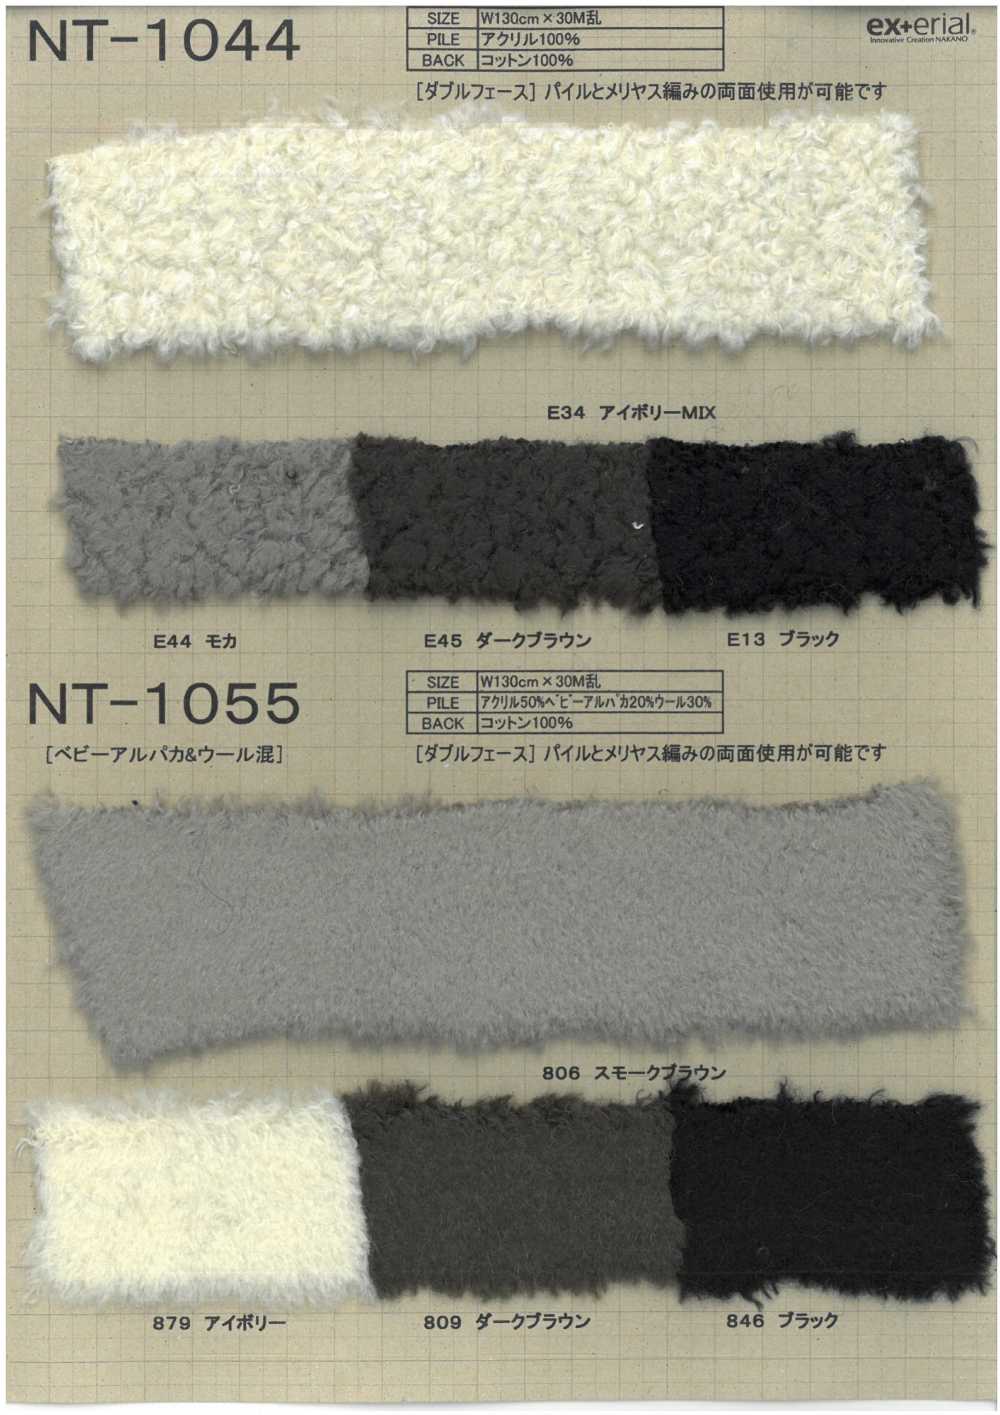 NT-1044 Piel Artesanal [oveja De Doble Cara][Fabrica Textil] Industria De La Media Nakano